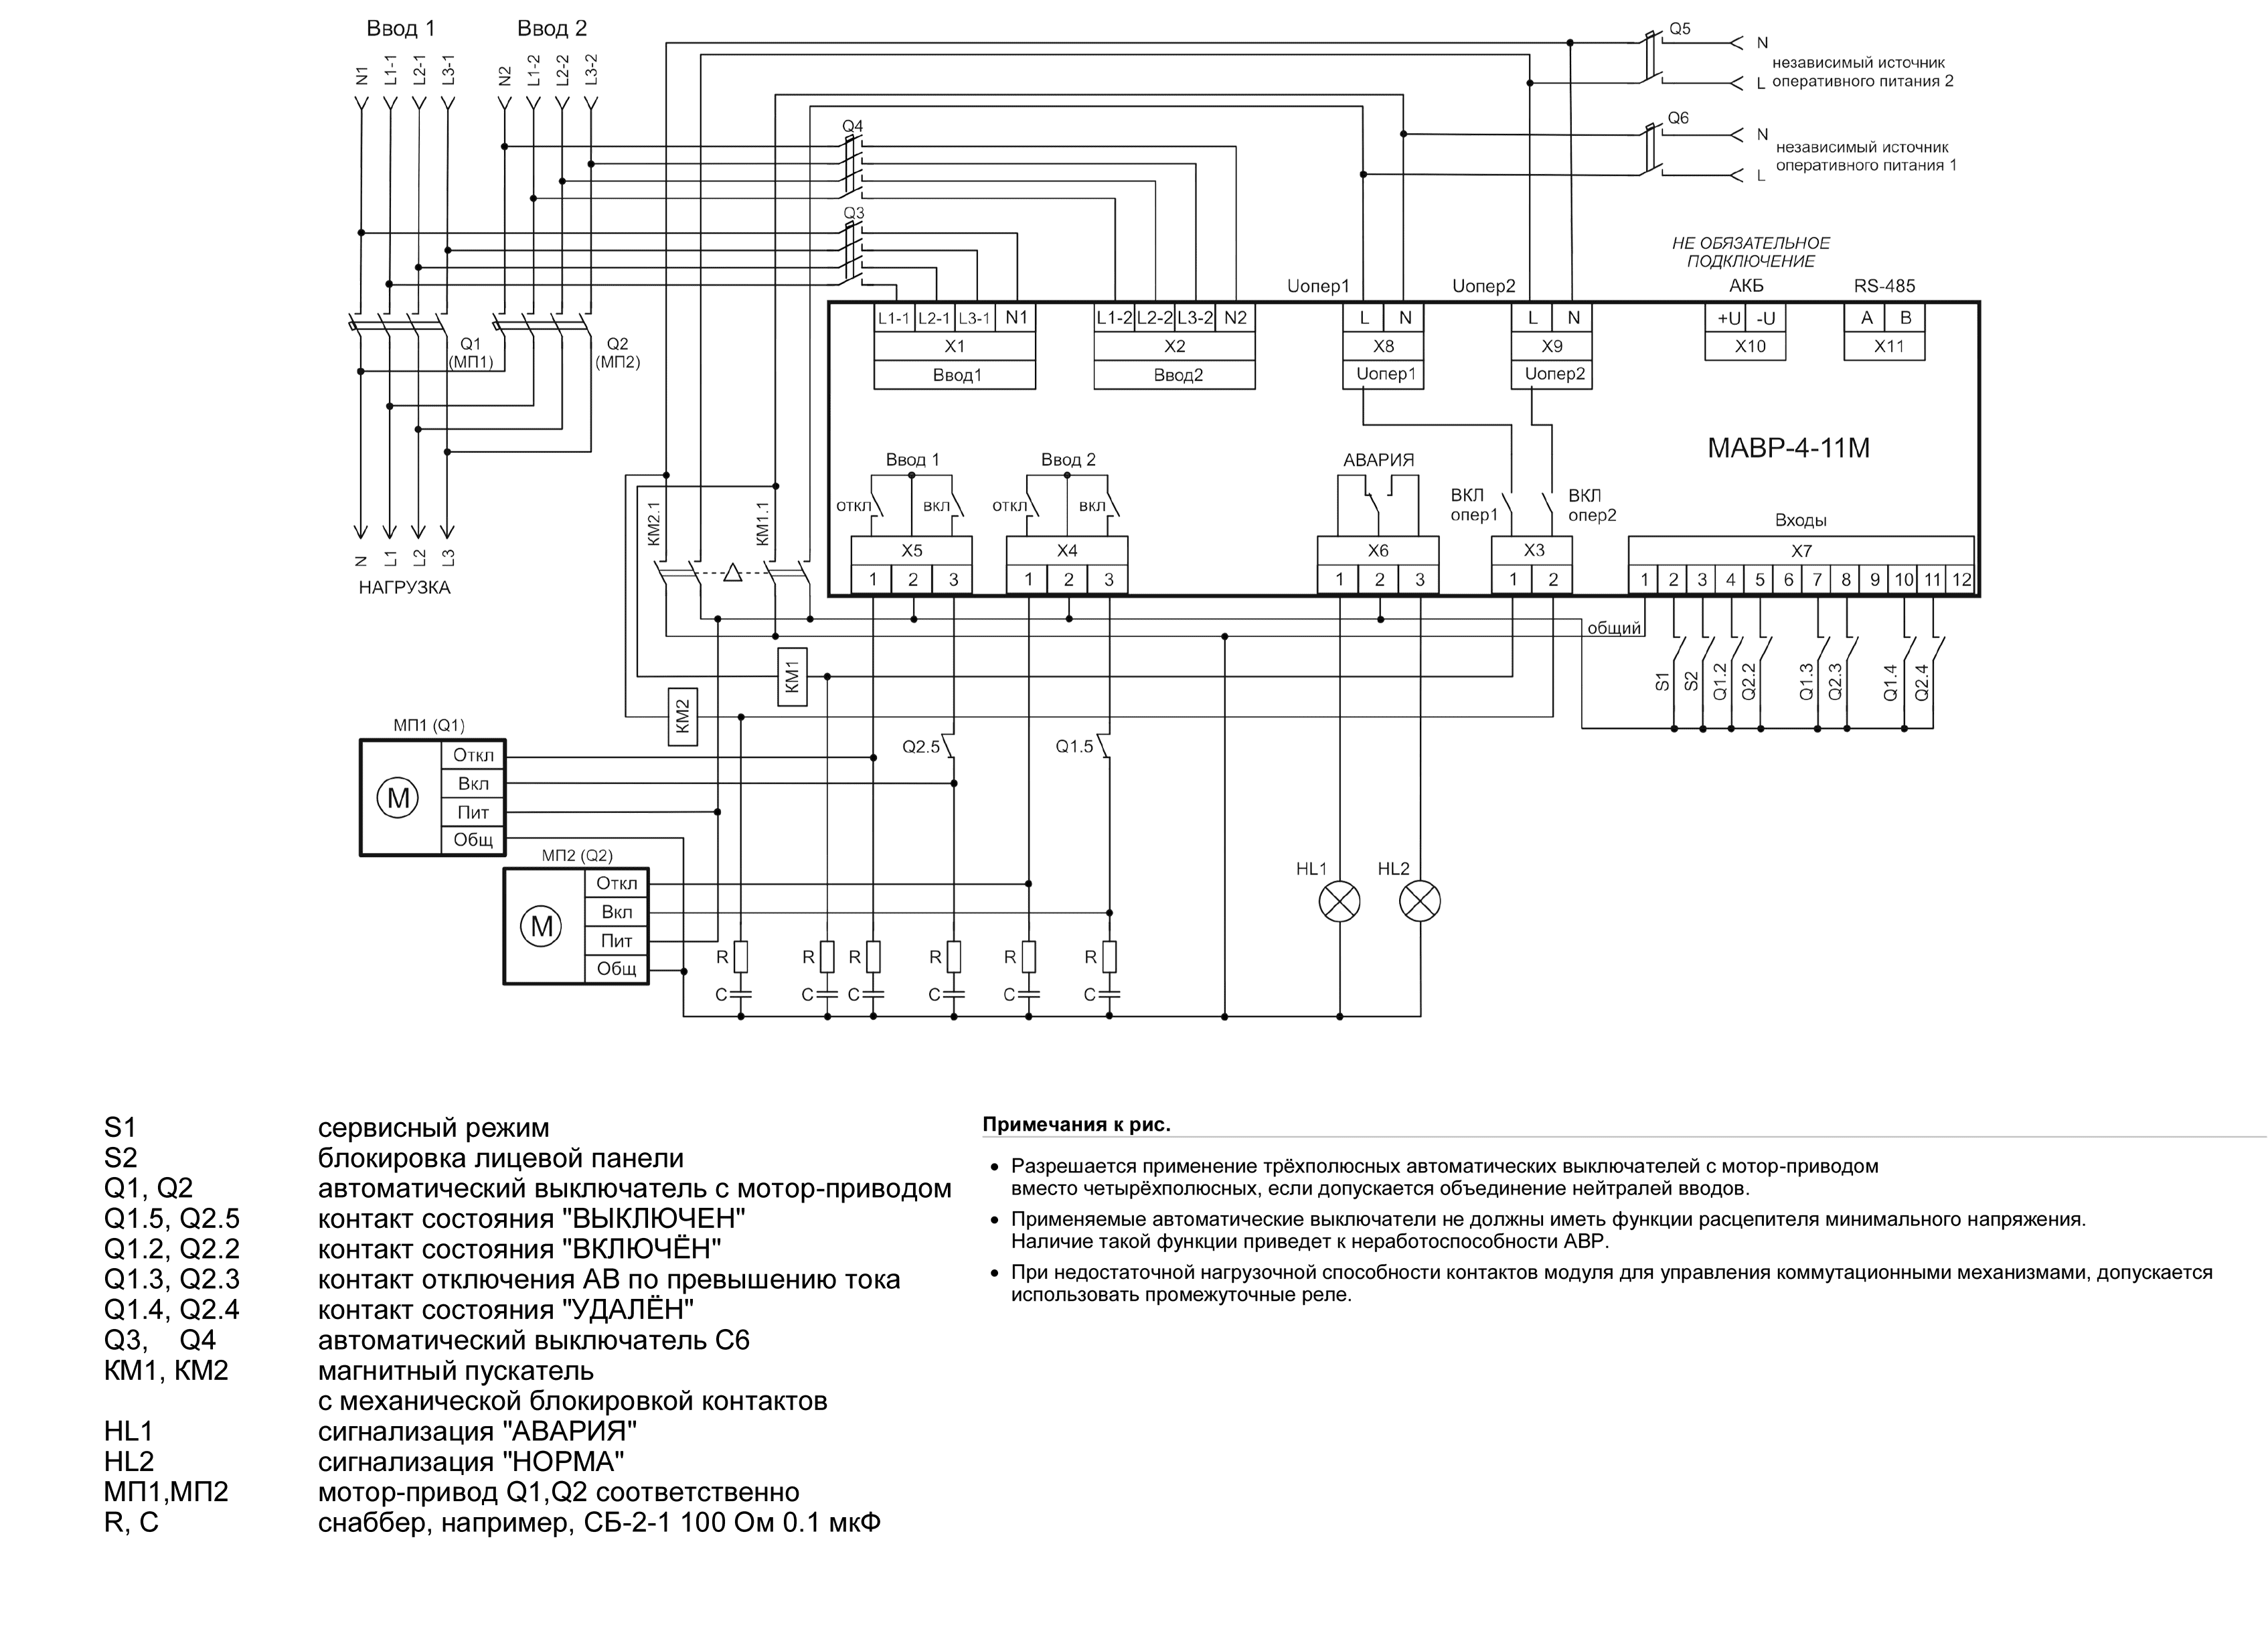 Схема АВР на автоматических выключателях МАВР-4-11М